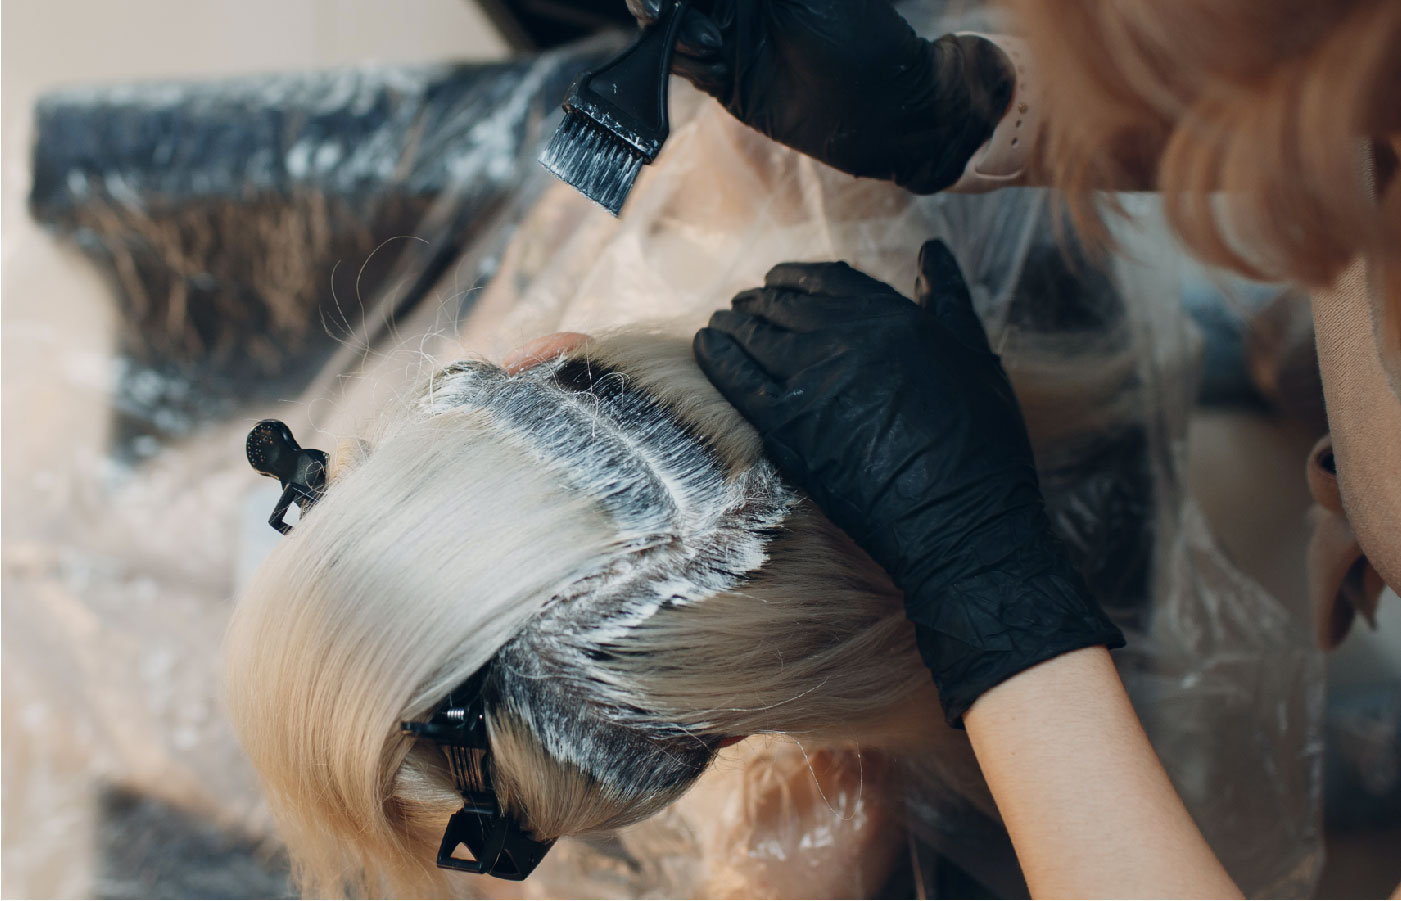 A person with hair bleach at a salon.